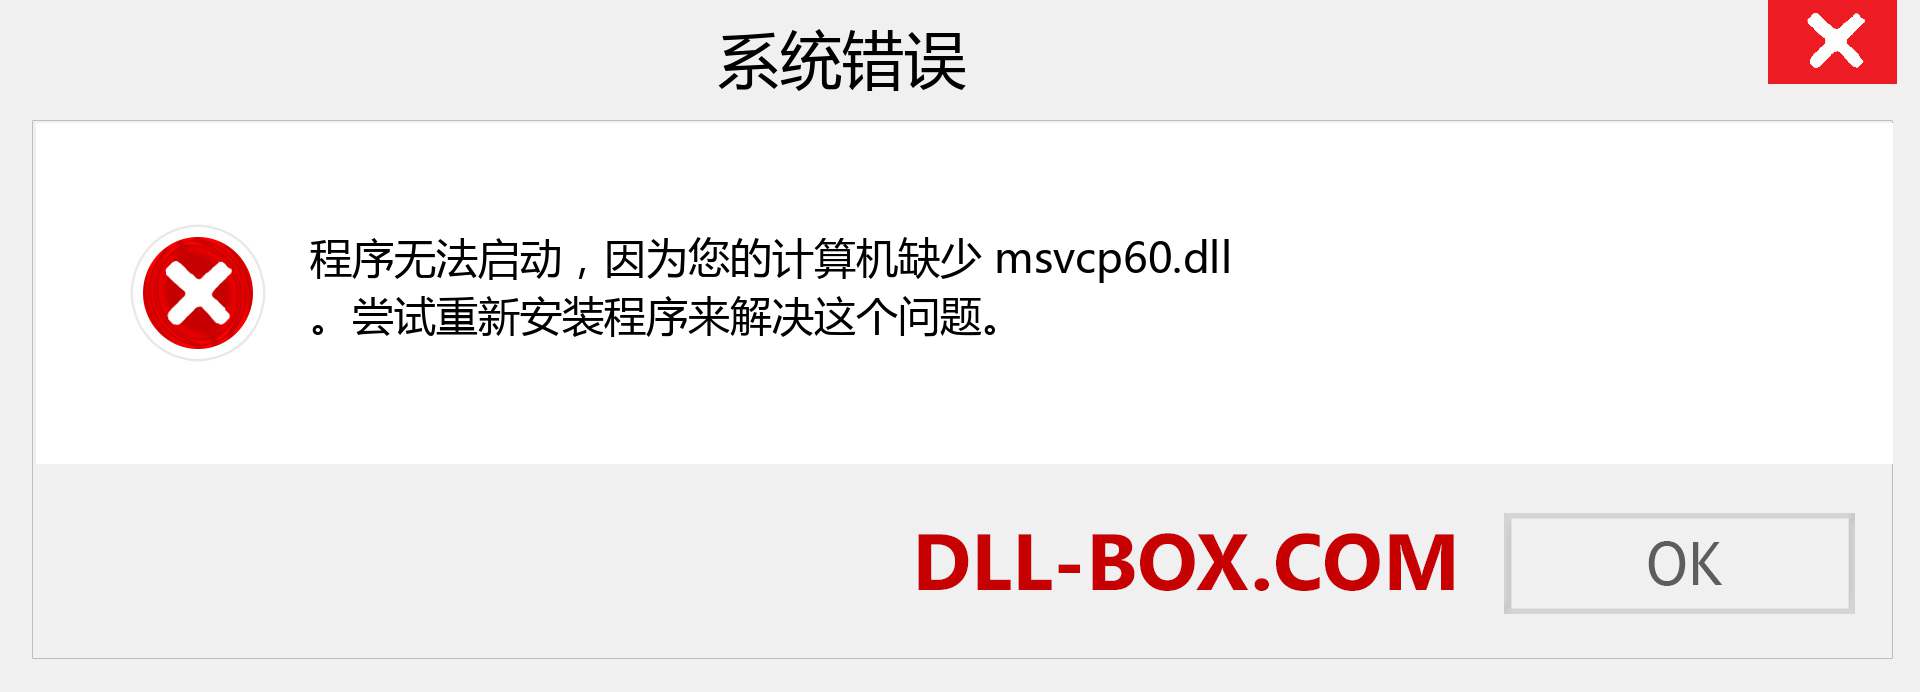 msvcp60.dll 文件丢失？。 适用于 Windows 7、8、10 的下载 - 修复 Windows、照片、图像上的 msvcp60 dll 丢失错误